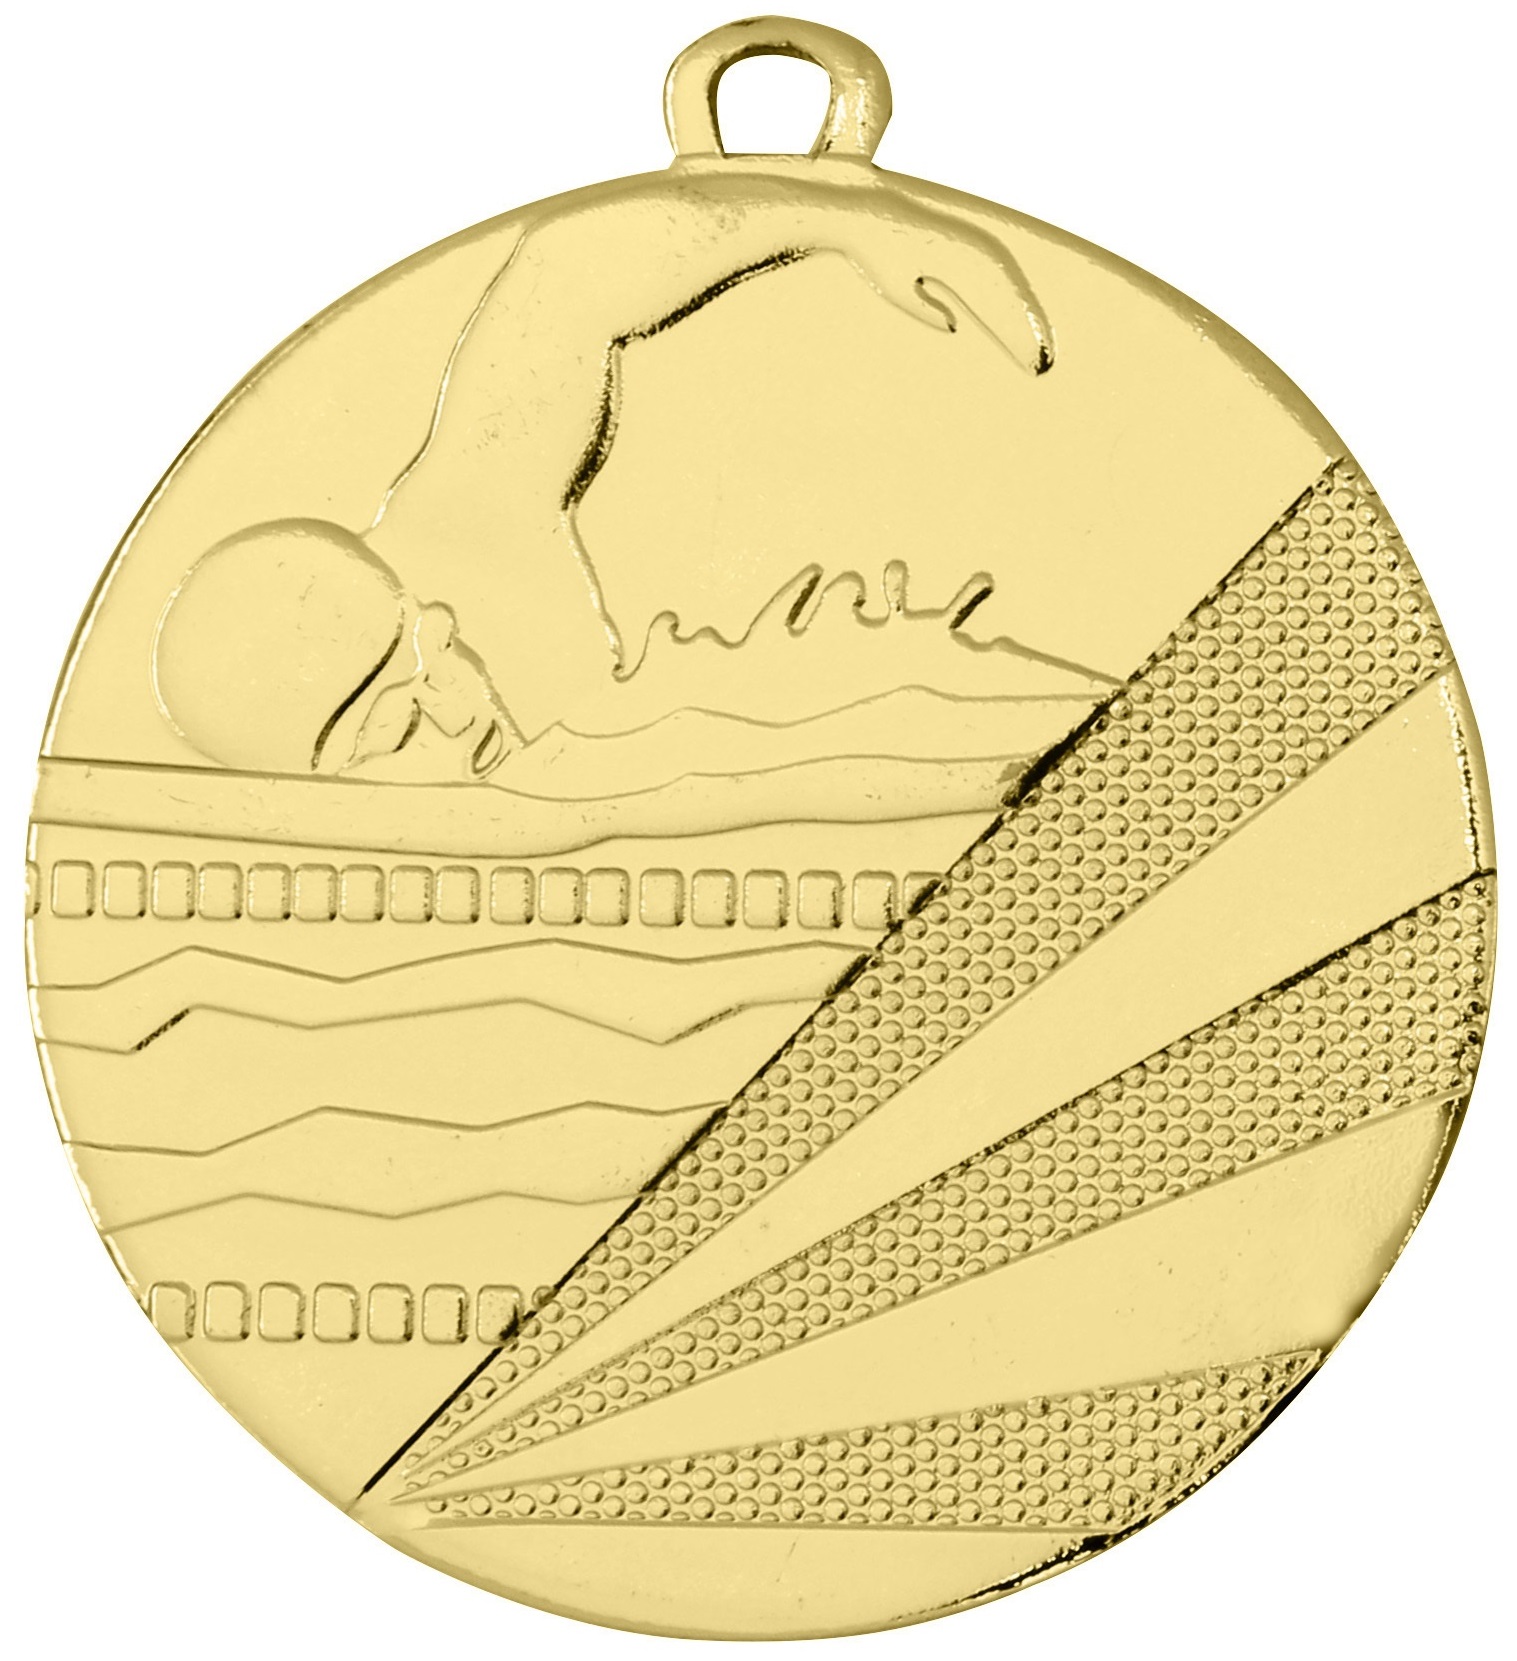 Schwimm-Medaille D112C inkl. Band u. Beschriftung Gold Unmontiert